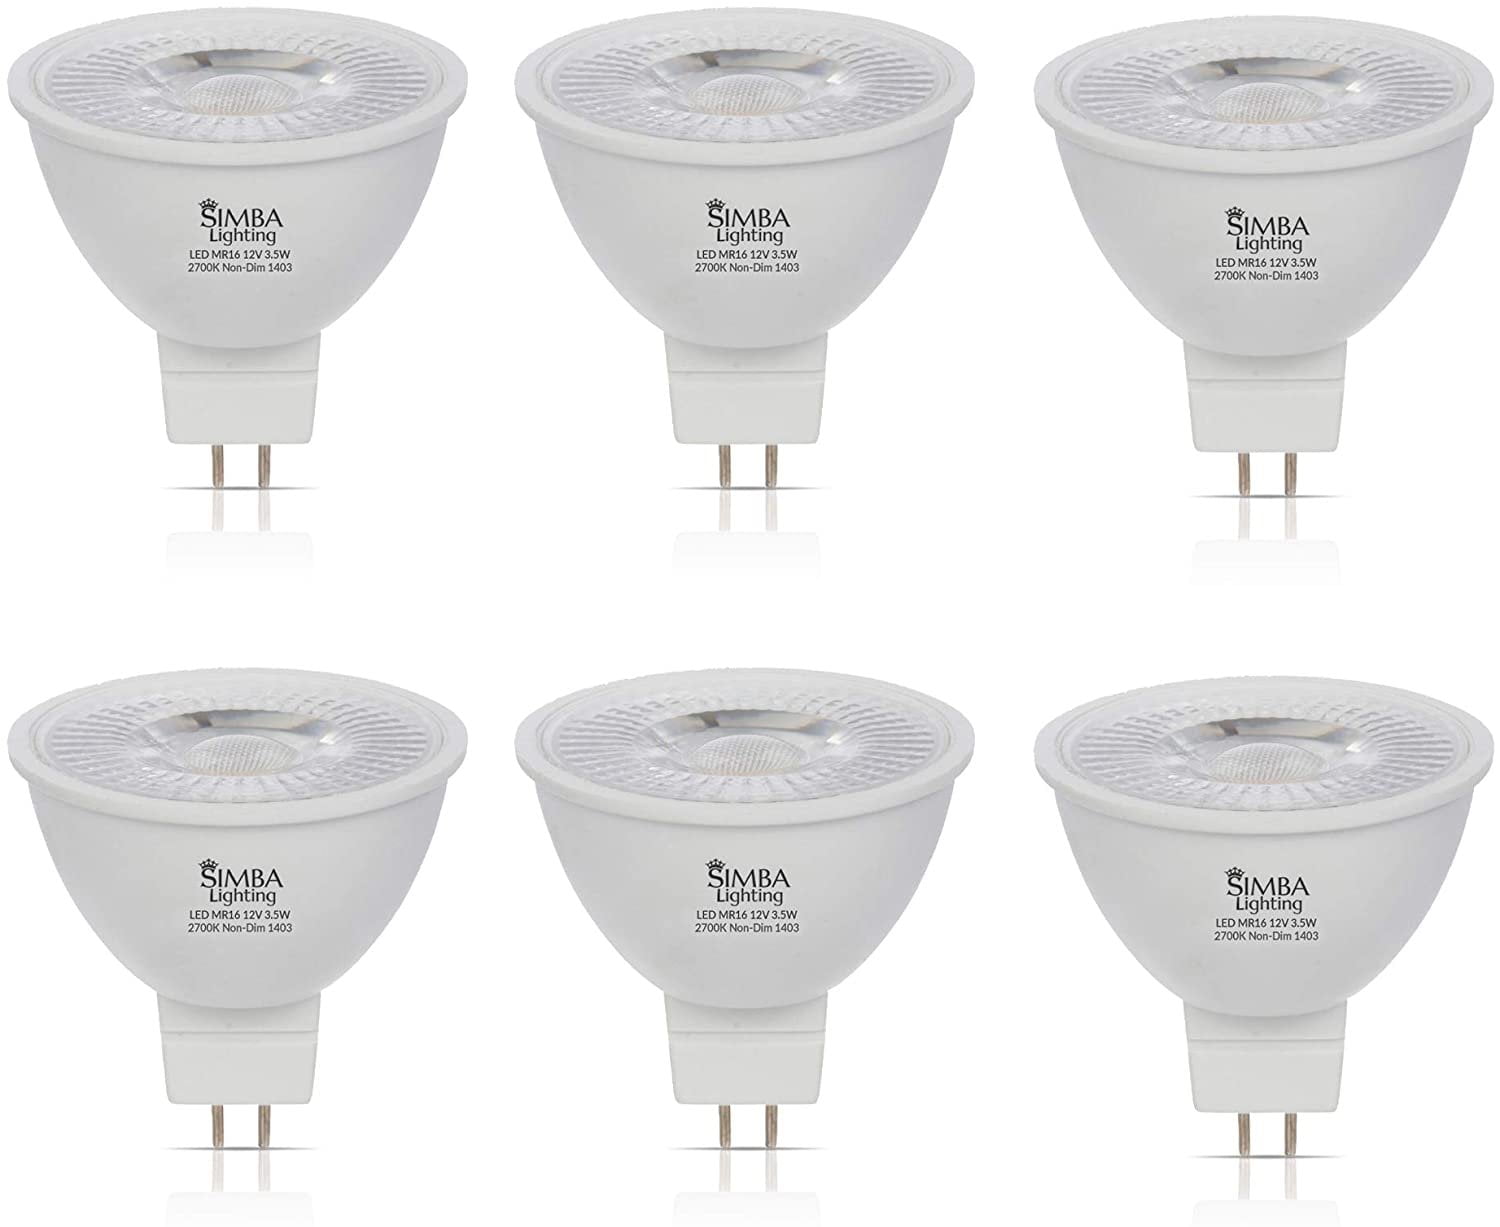 BAOMING MR16 LED Bulb 5W Warm White GU5.3,Non-Dimming 12V Spotlight Landscape  Track Lighting,6 Pack 